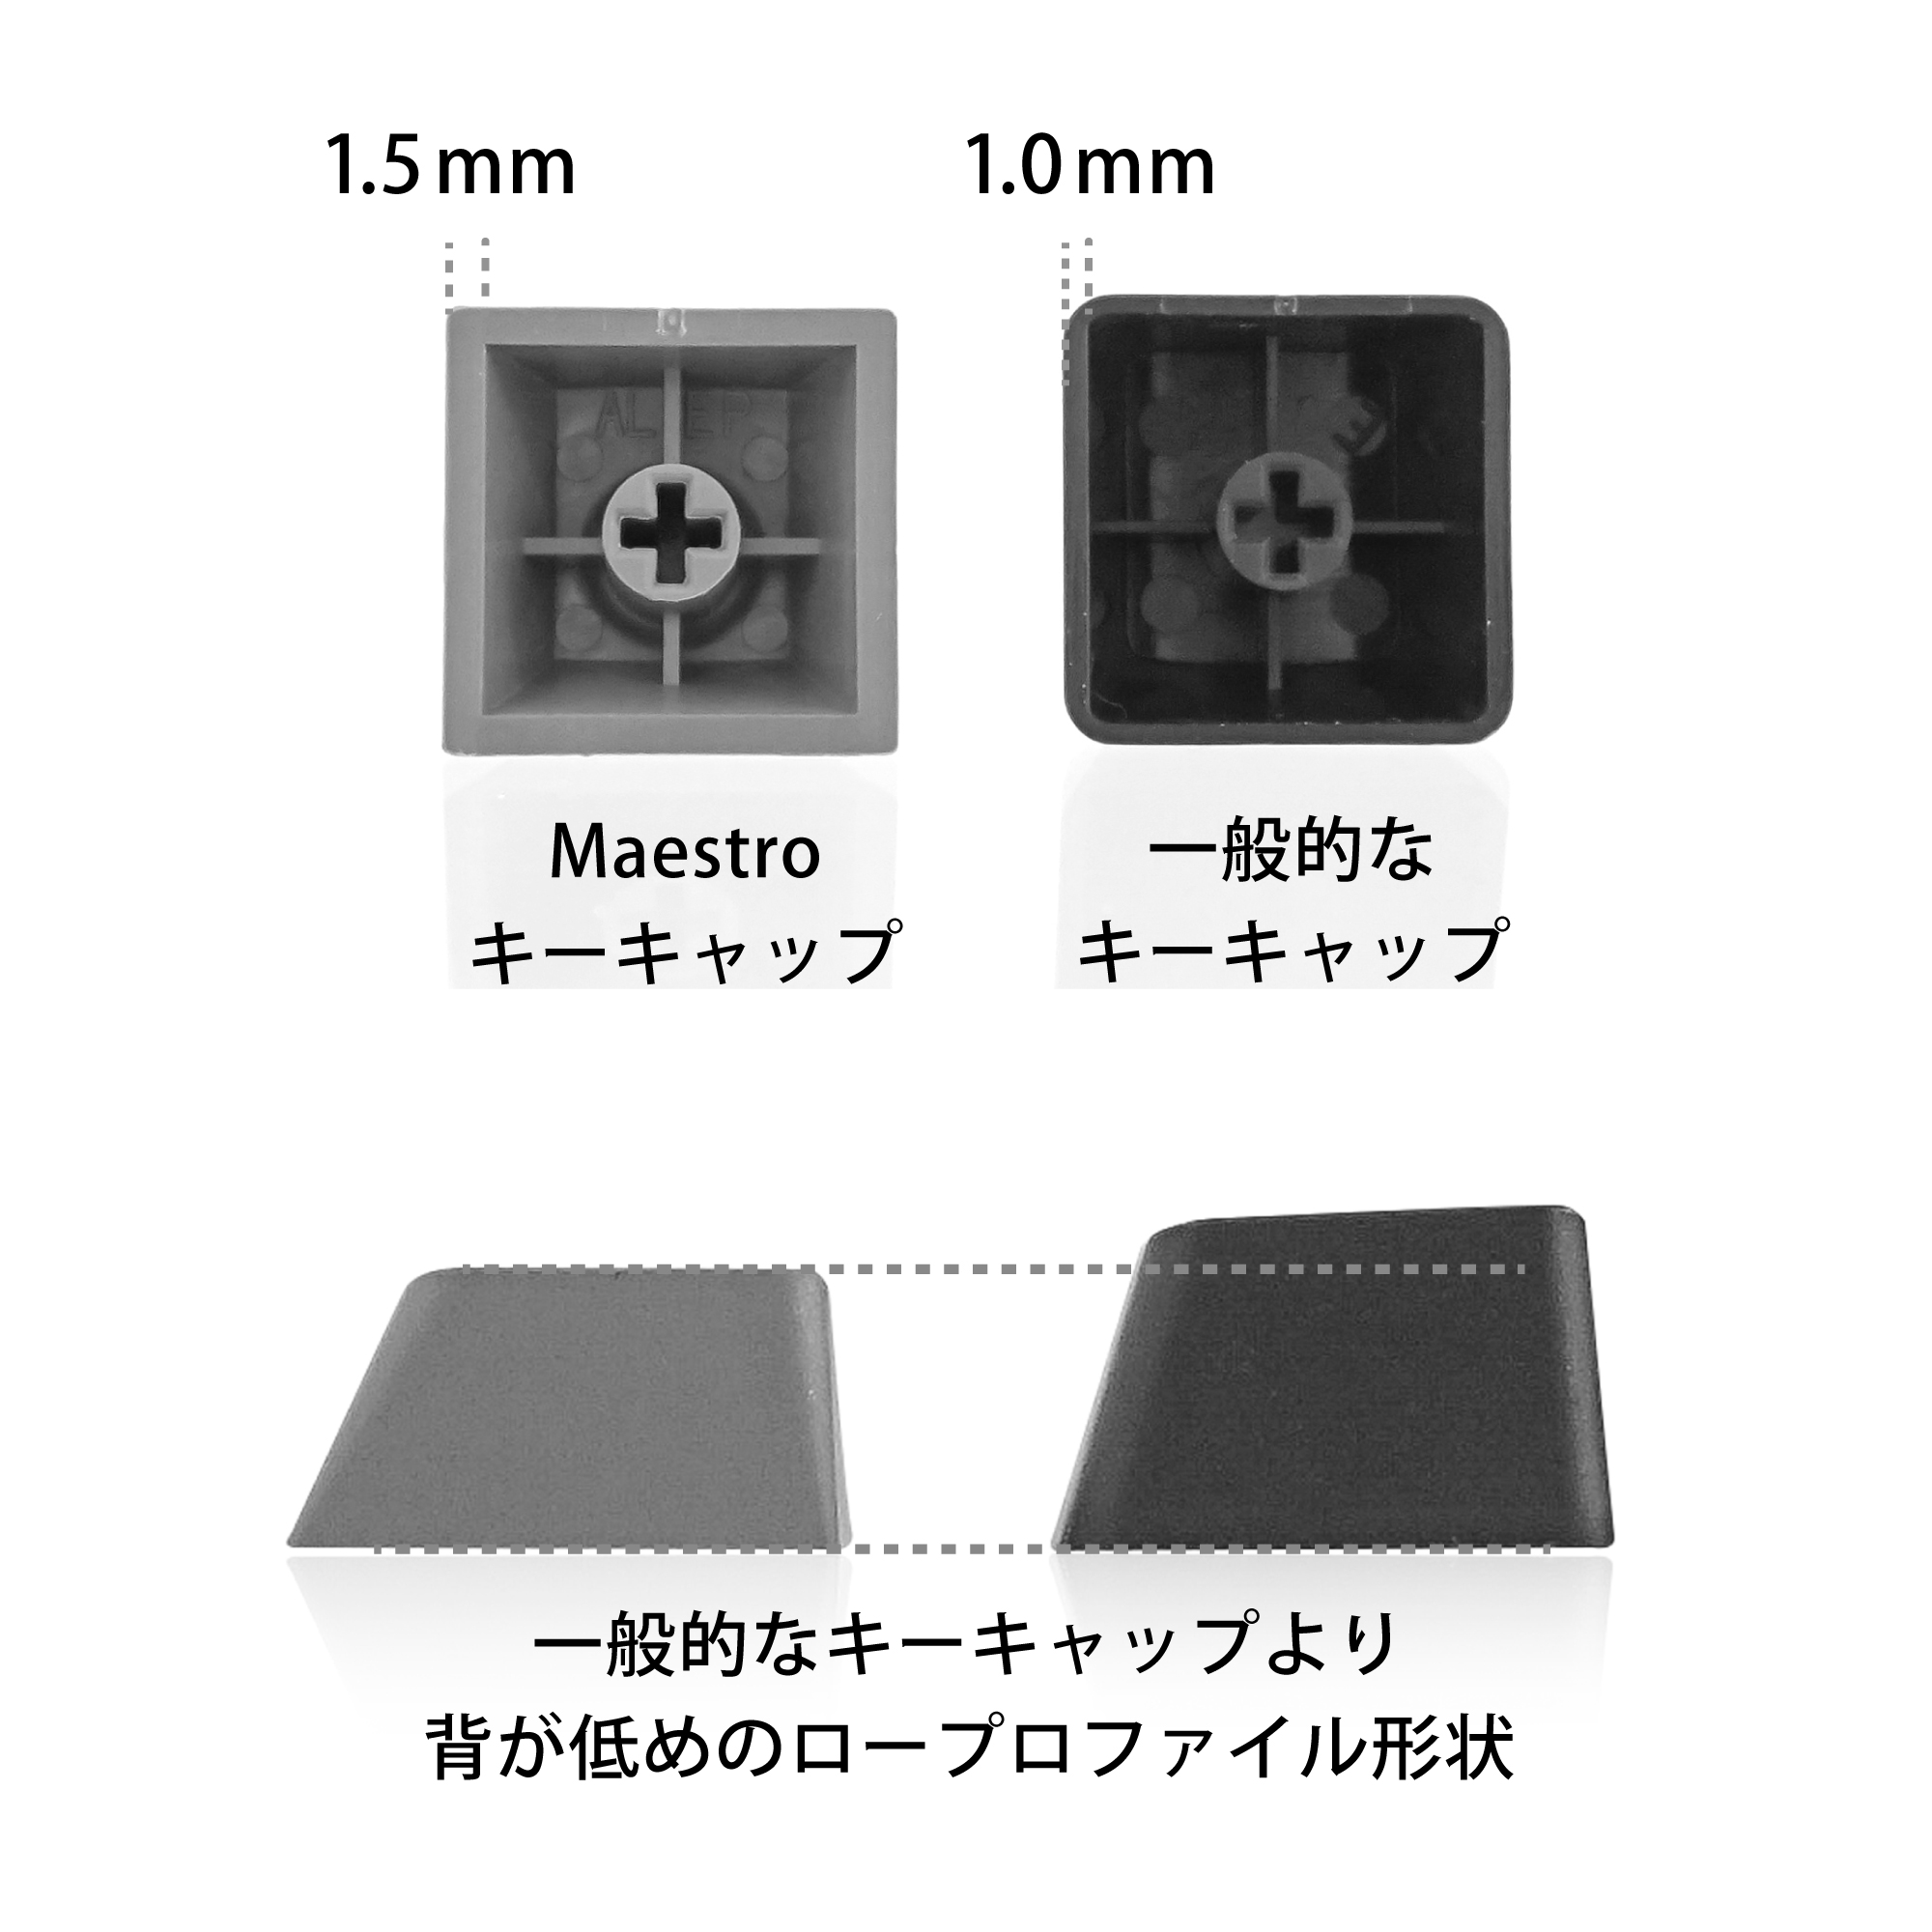 アーキス メカニカル キーボード Maestro FL 日本語配列 キー数: 108かな印字有りキートップ引き抜き工具 付属 CHERRY MX